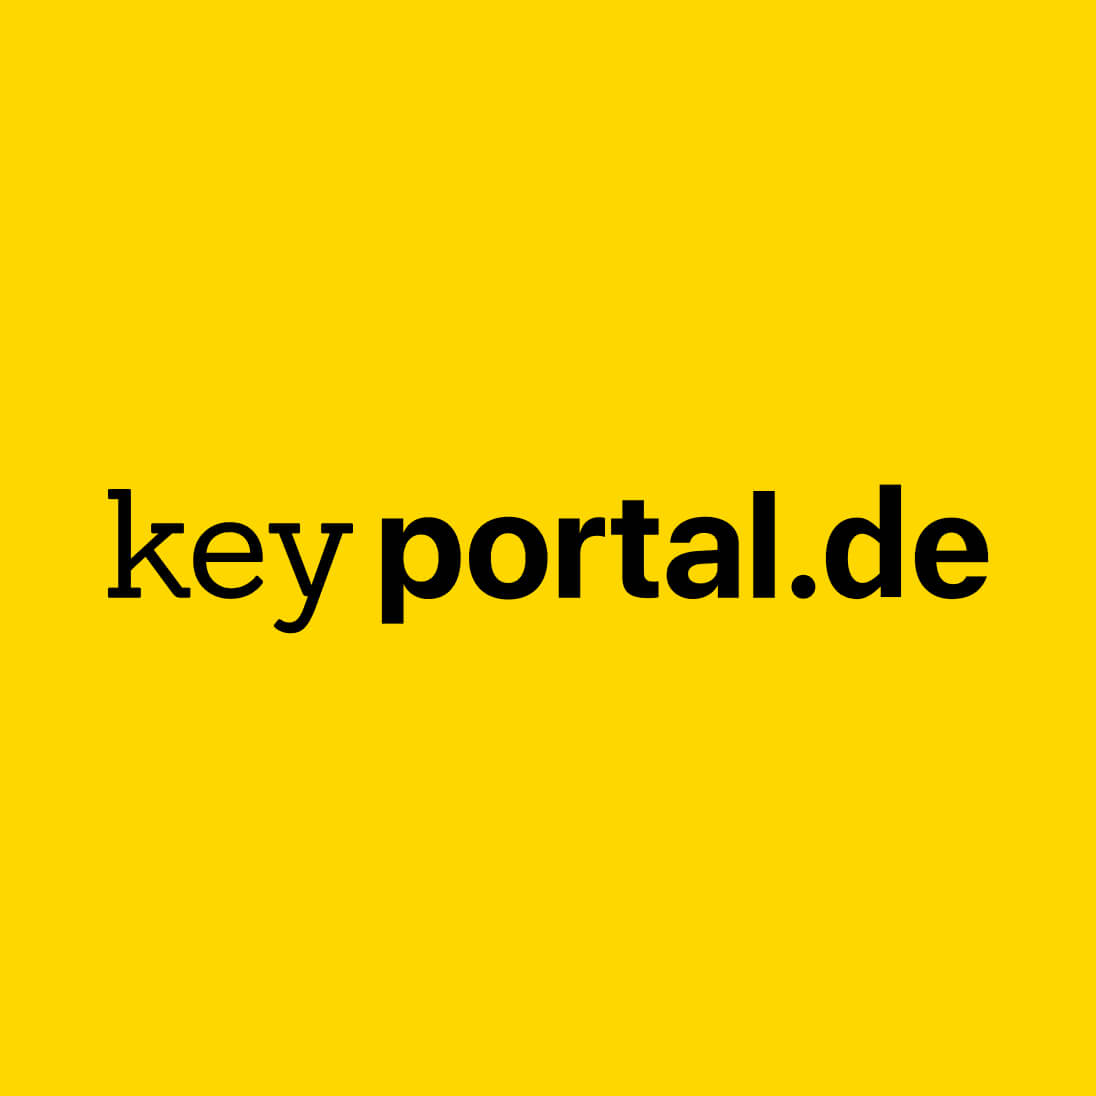 (c) Keyportal.de